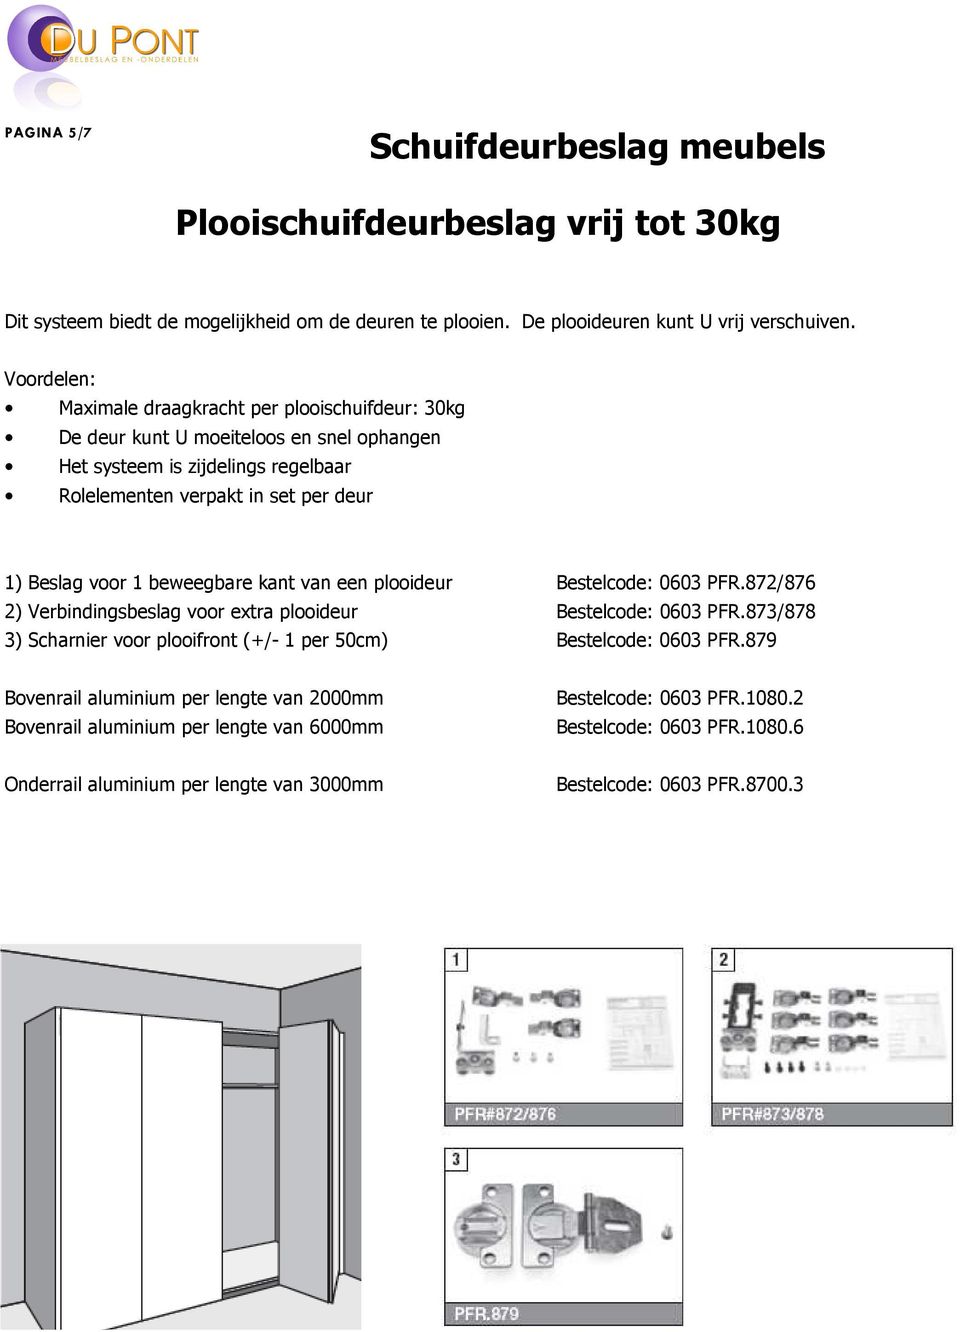 deur 1) Beslag voor 1 beweegbare kant van een plooideur 0603 PFR.872/876 2) Verbindingsbeslag voor extra plooideur 0603 PFR.